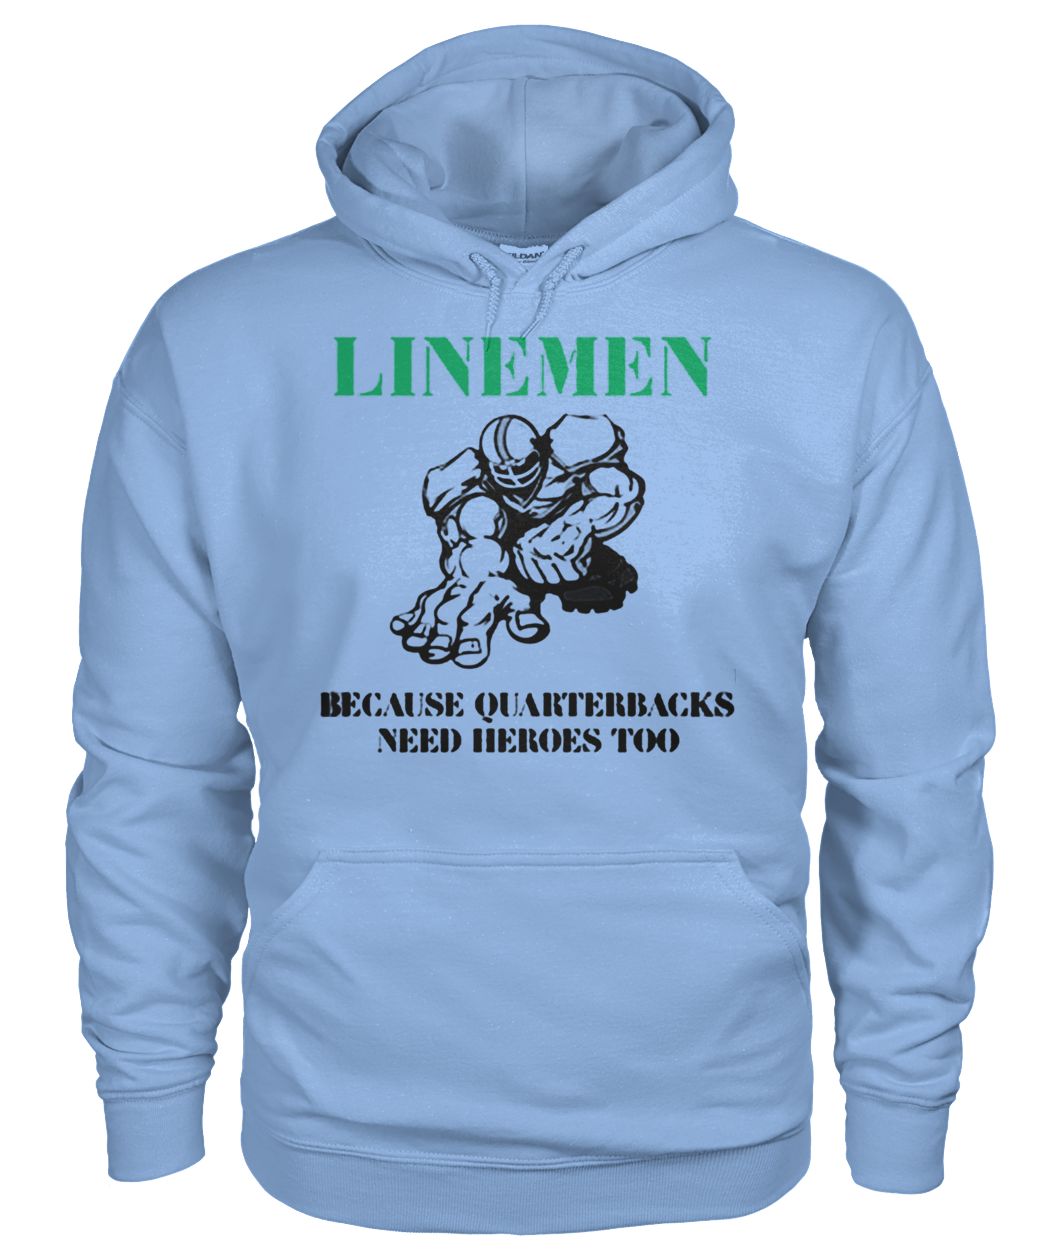 Linemen because quarterbacks need heroes too gildan hoodie